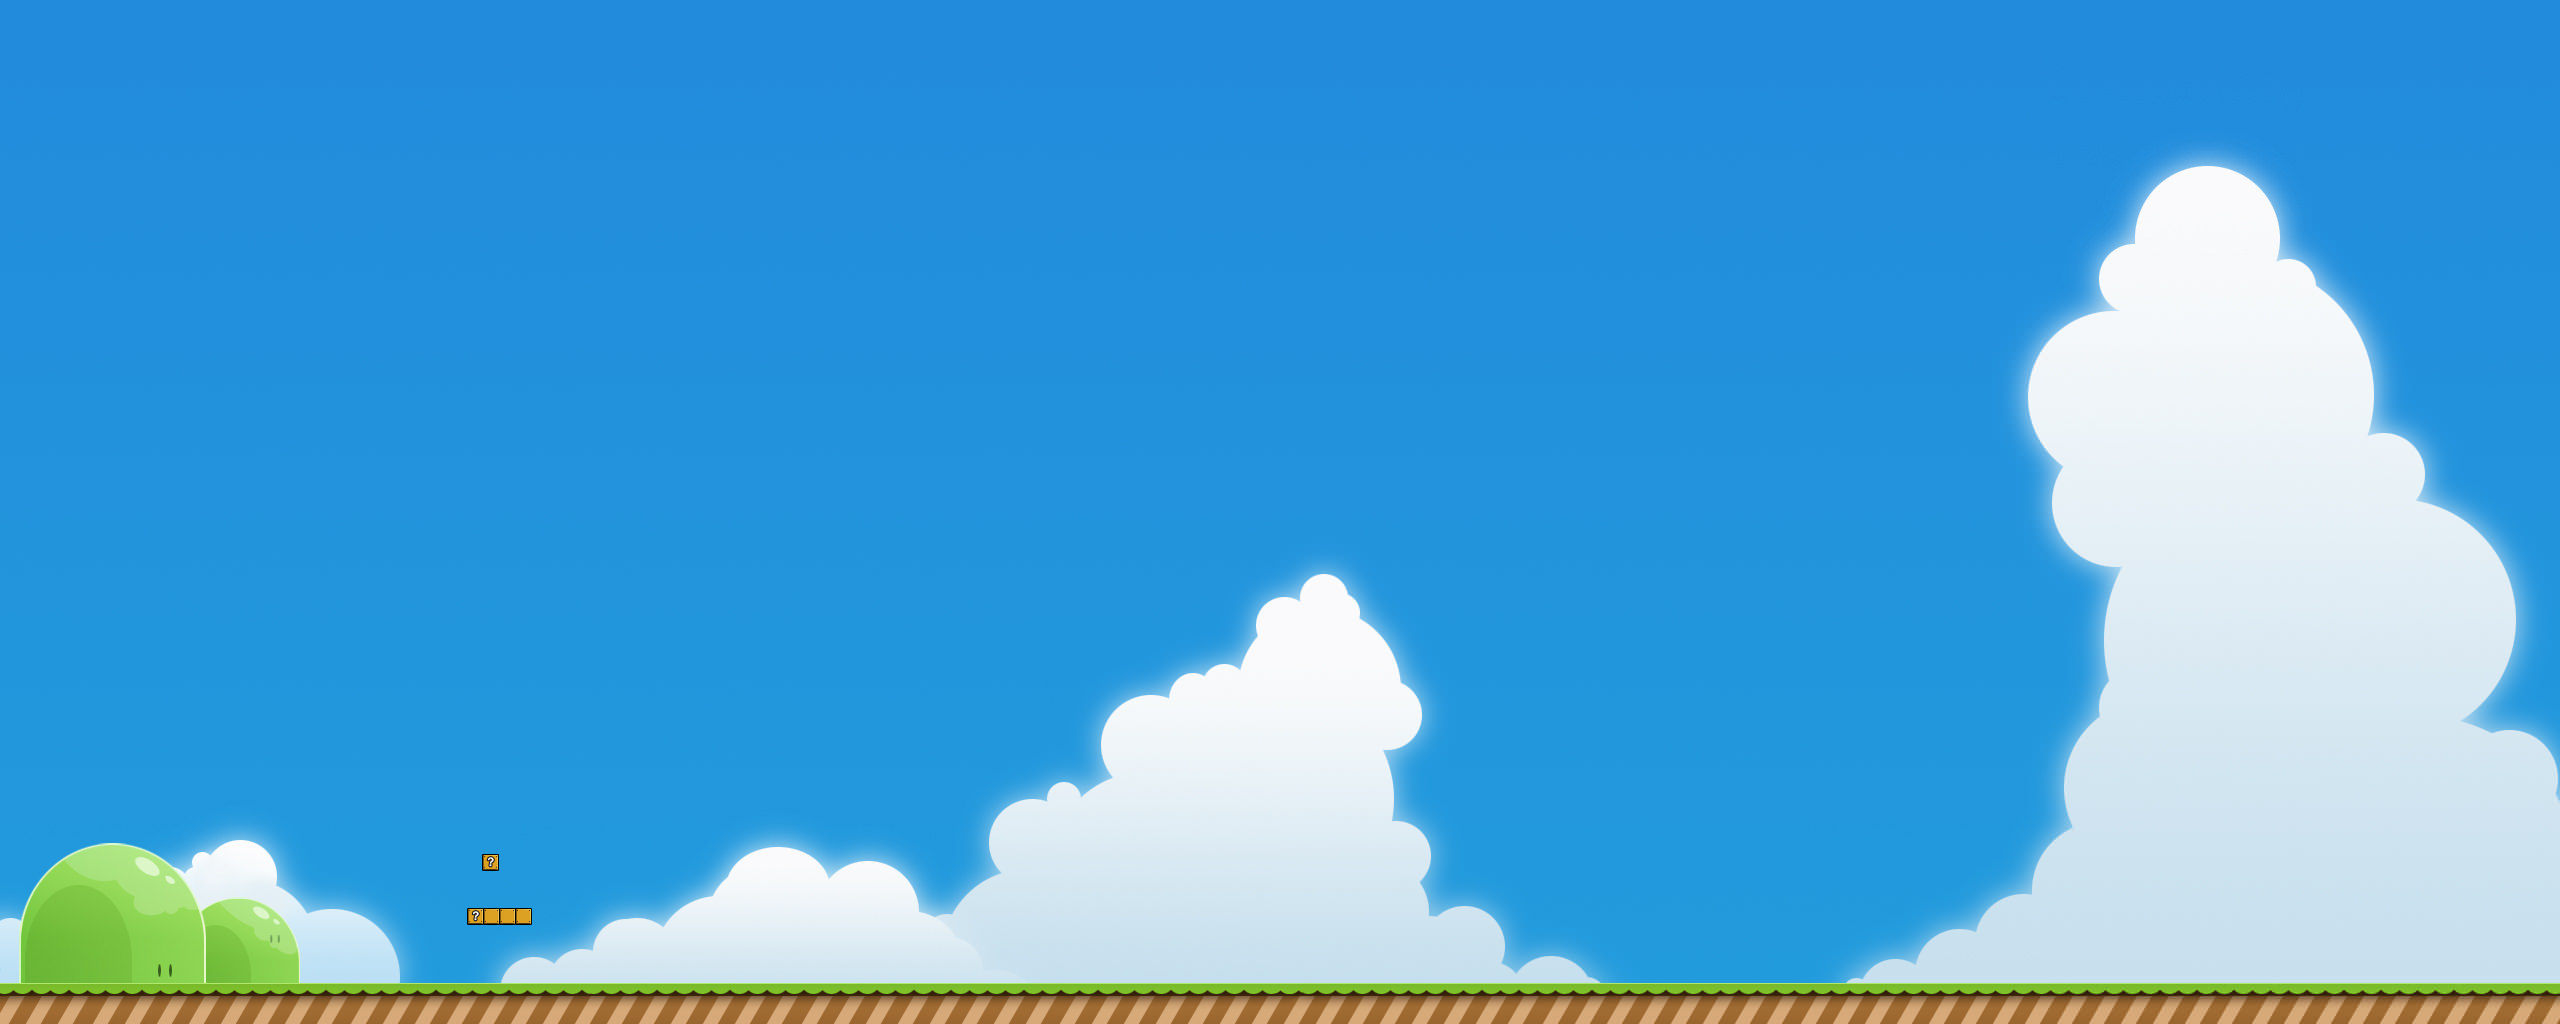 스팬 벽지,하늘,푸른,낮,구름,아쿠아